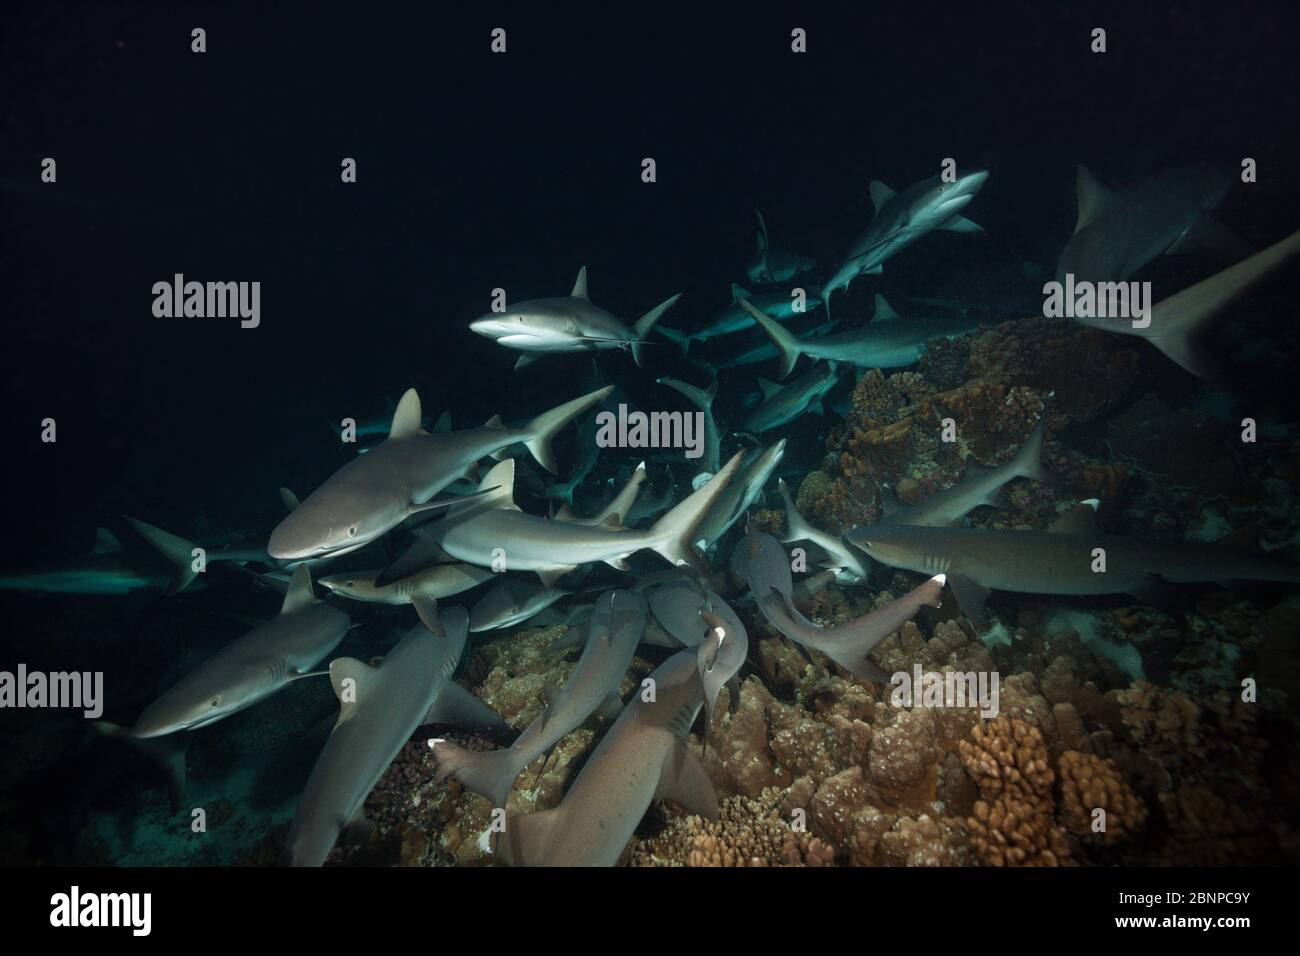 Chasse Aux Requins De Récif Gris La Nuit, Carcharhinus Amblyrhynchos, Fakarava, Tuamotu Archipel, Polynésie Française Banque D'Images